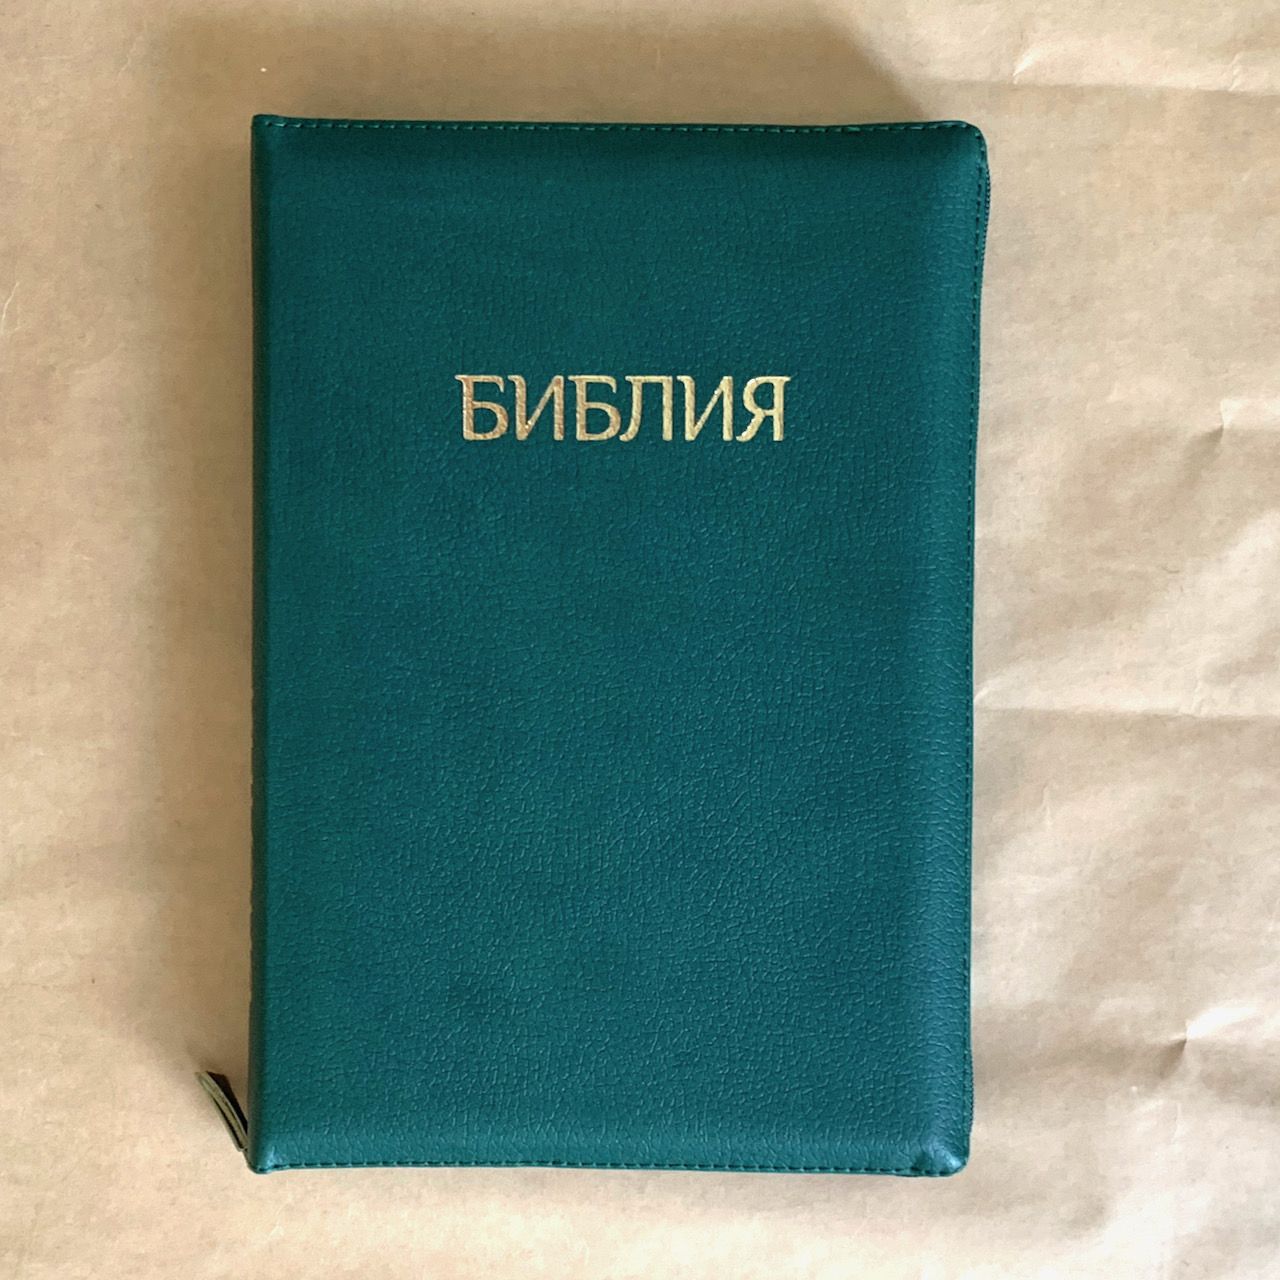 БИБЛИЯ 077zti формат, переплет из искусственной кожи на молнии с индексами, надпись золотом "Библия", цвет темно-зеленый пятнистый, большой формат, 180*260 мм, цветные карты, крупный шрифт